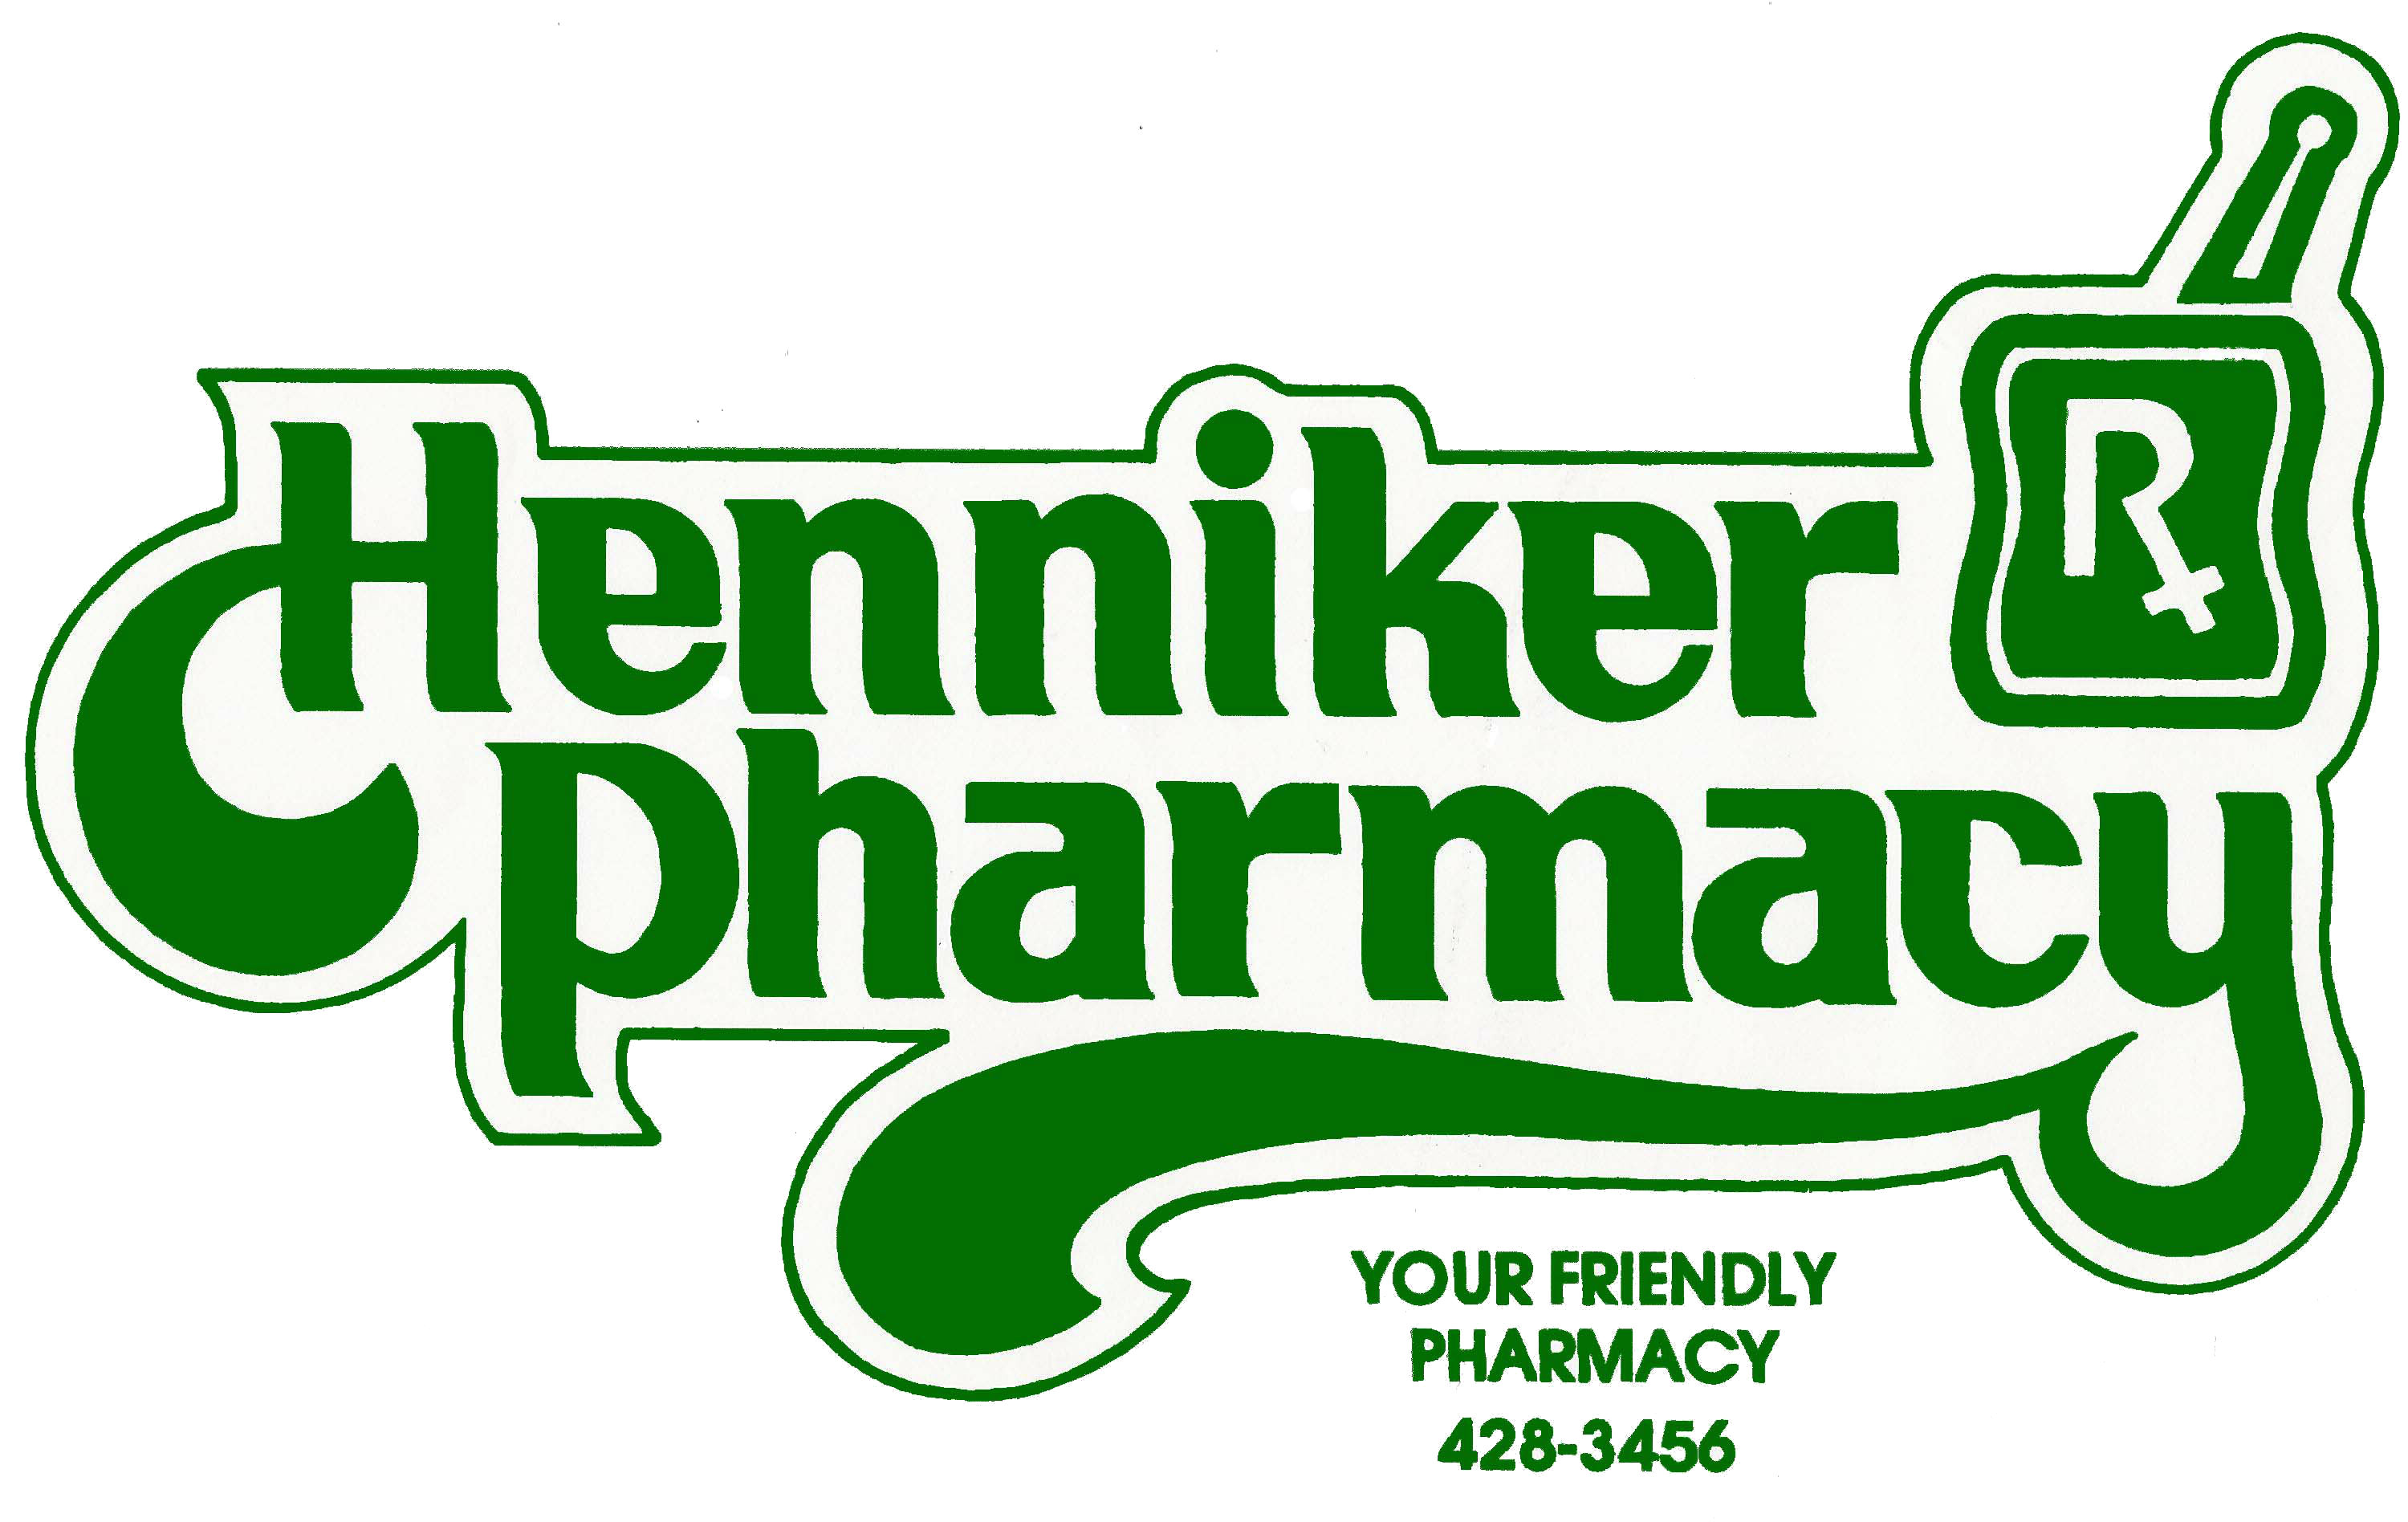 Henniker Pharmacy